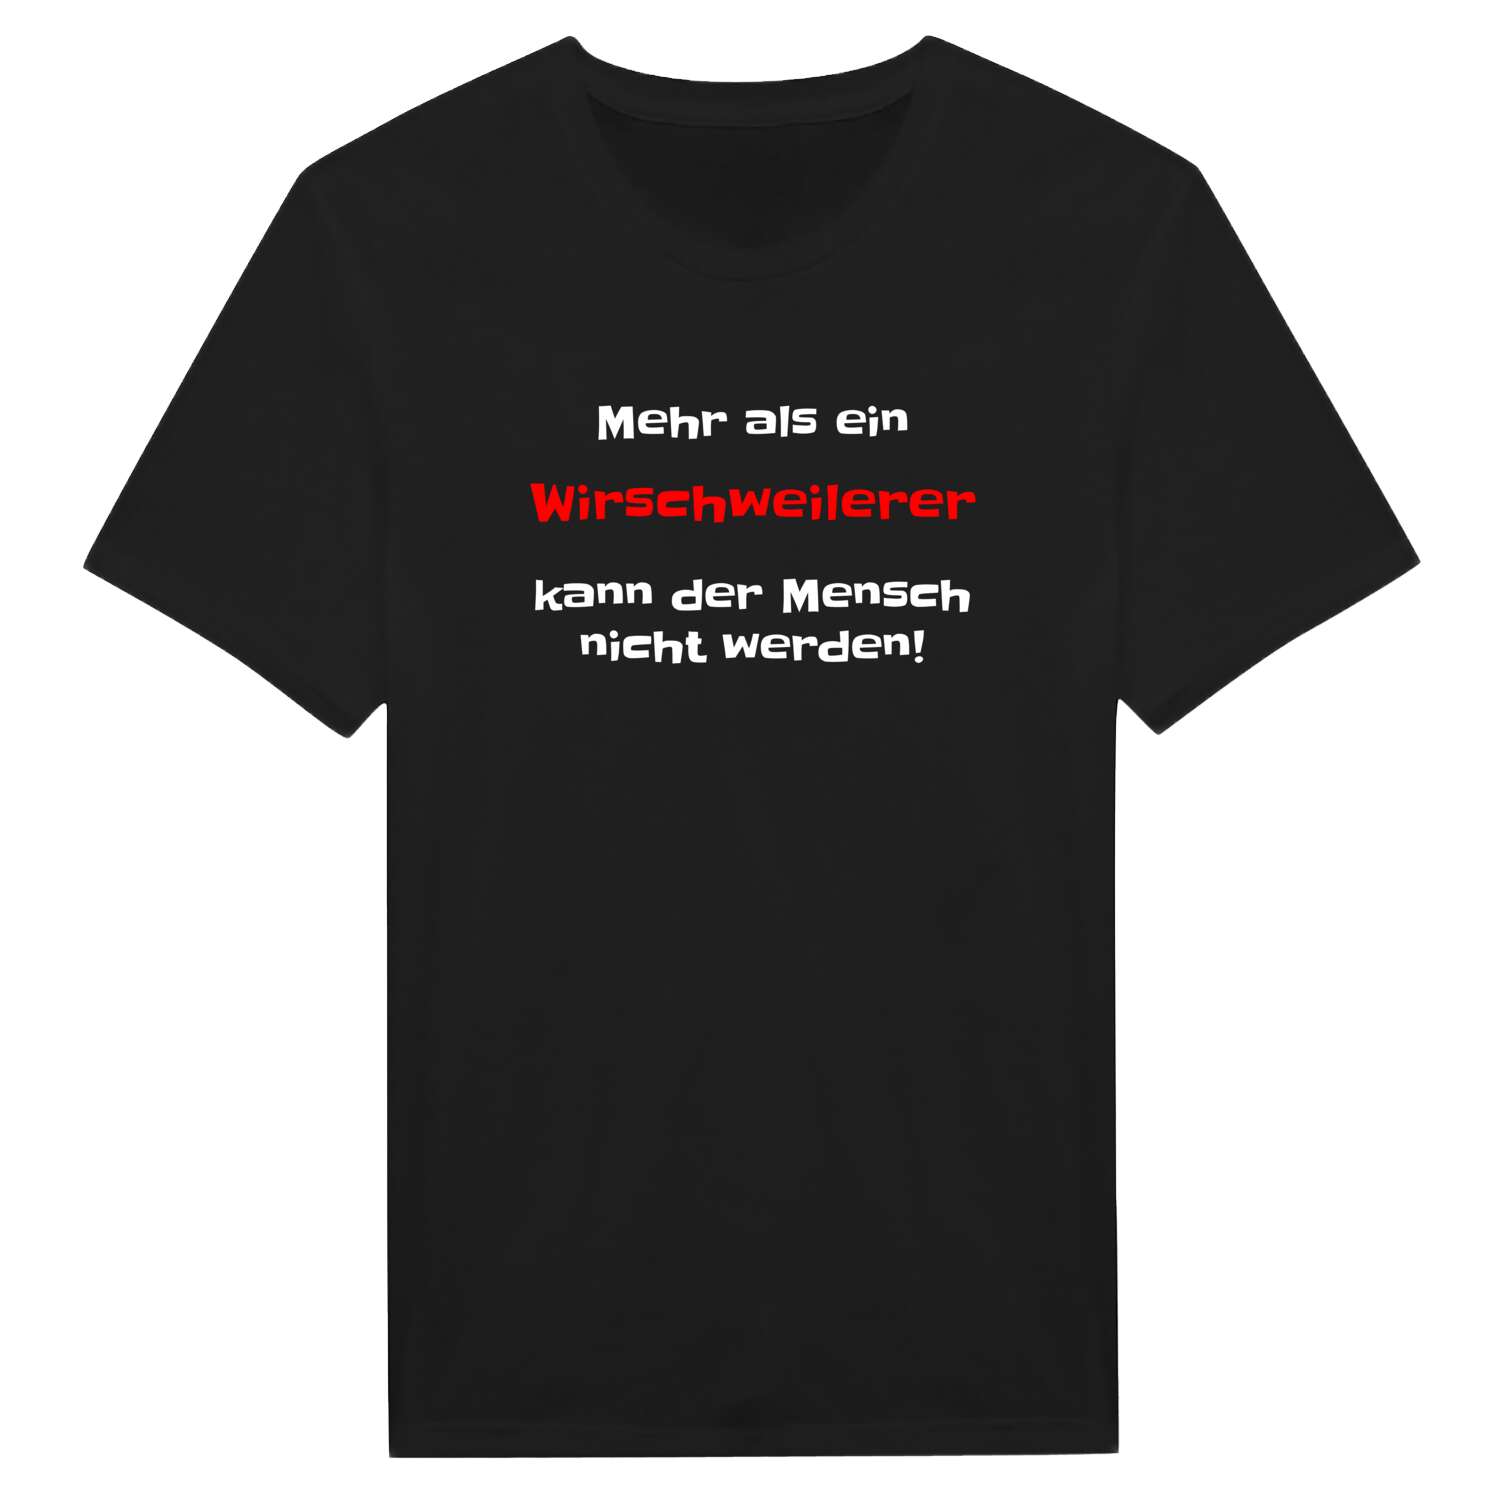 Wirschweiler T-Shirt »Mehr als ein«